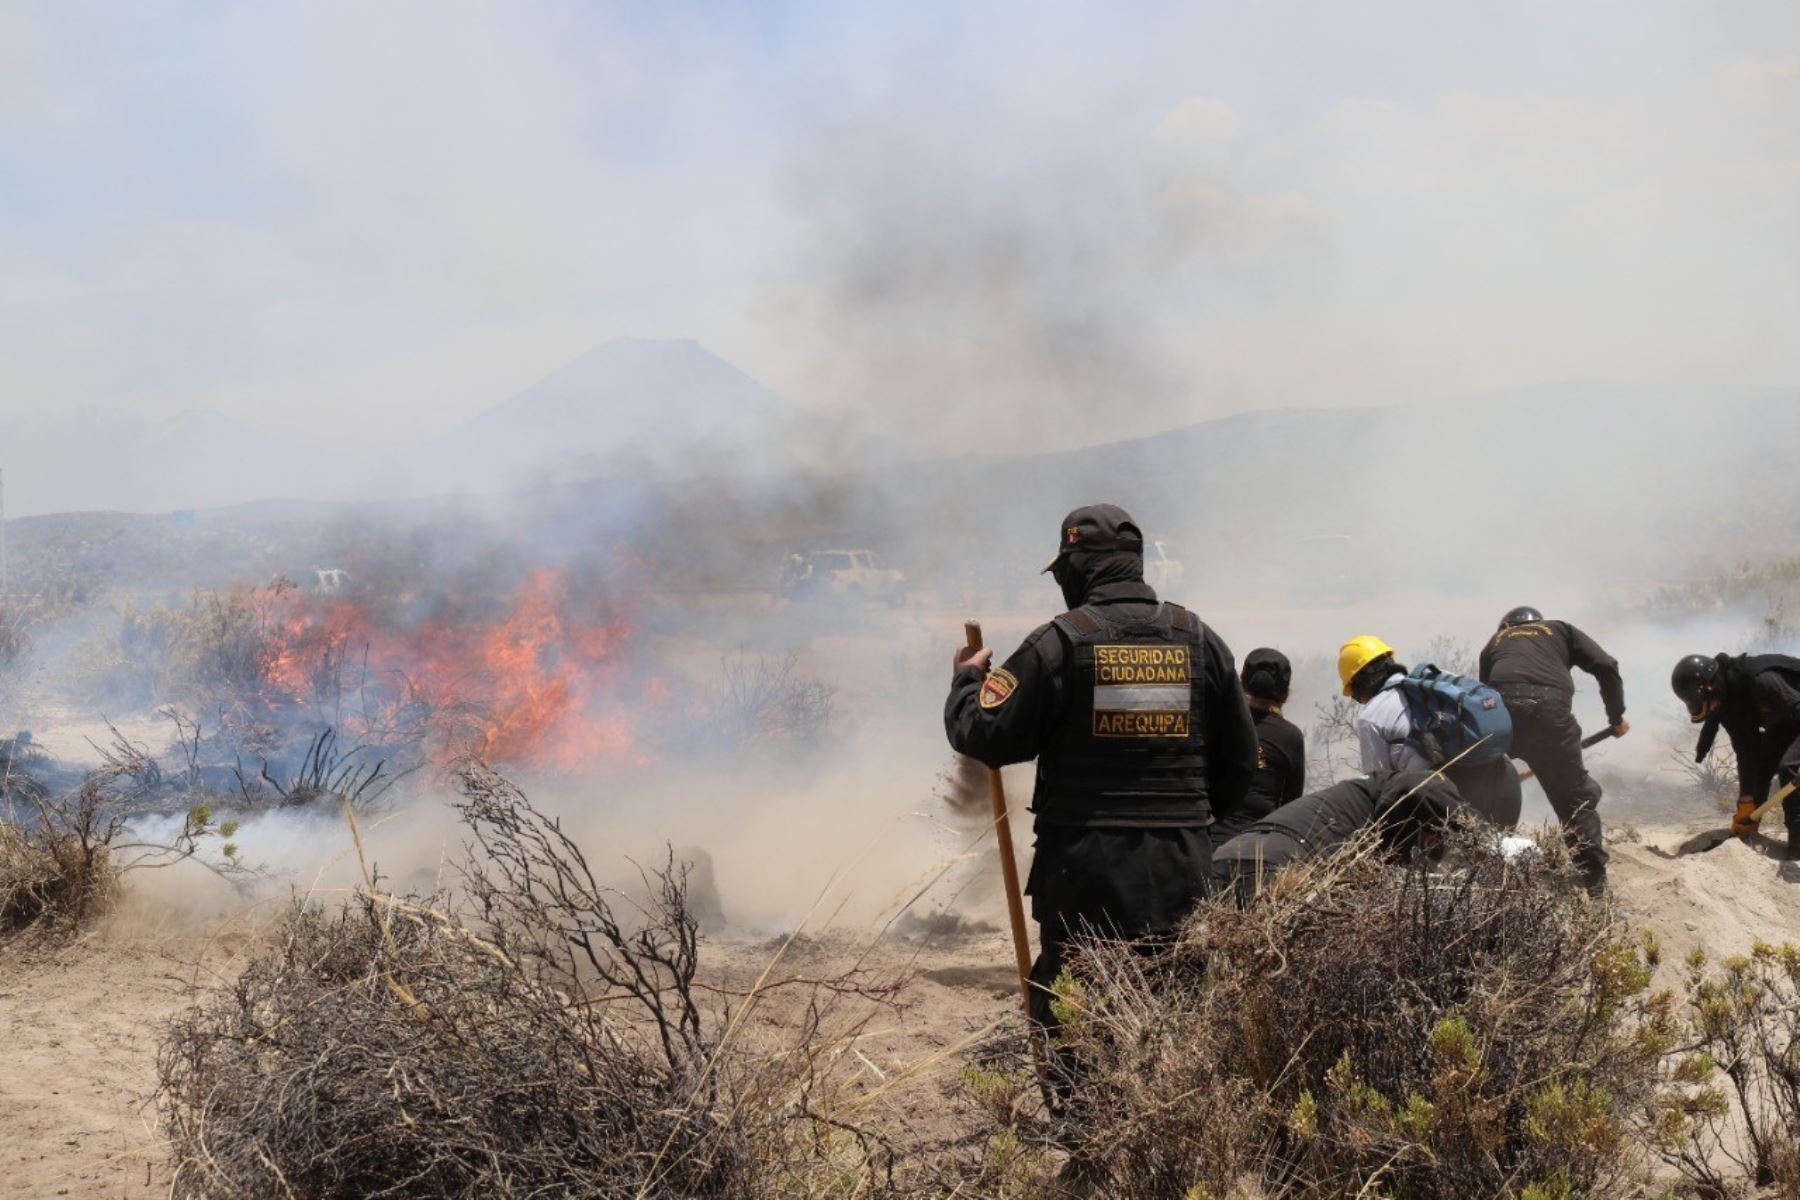 Los técnicos del Serfor realizaron la parte práctica en el área de pastos y arbustos naturales del distrito de Pocsi, donde apagaron amagos de incendio controlados.